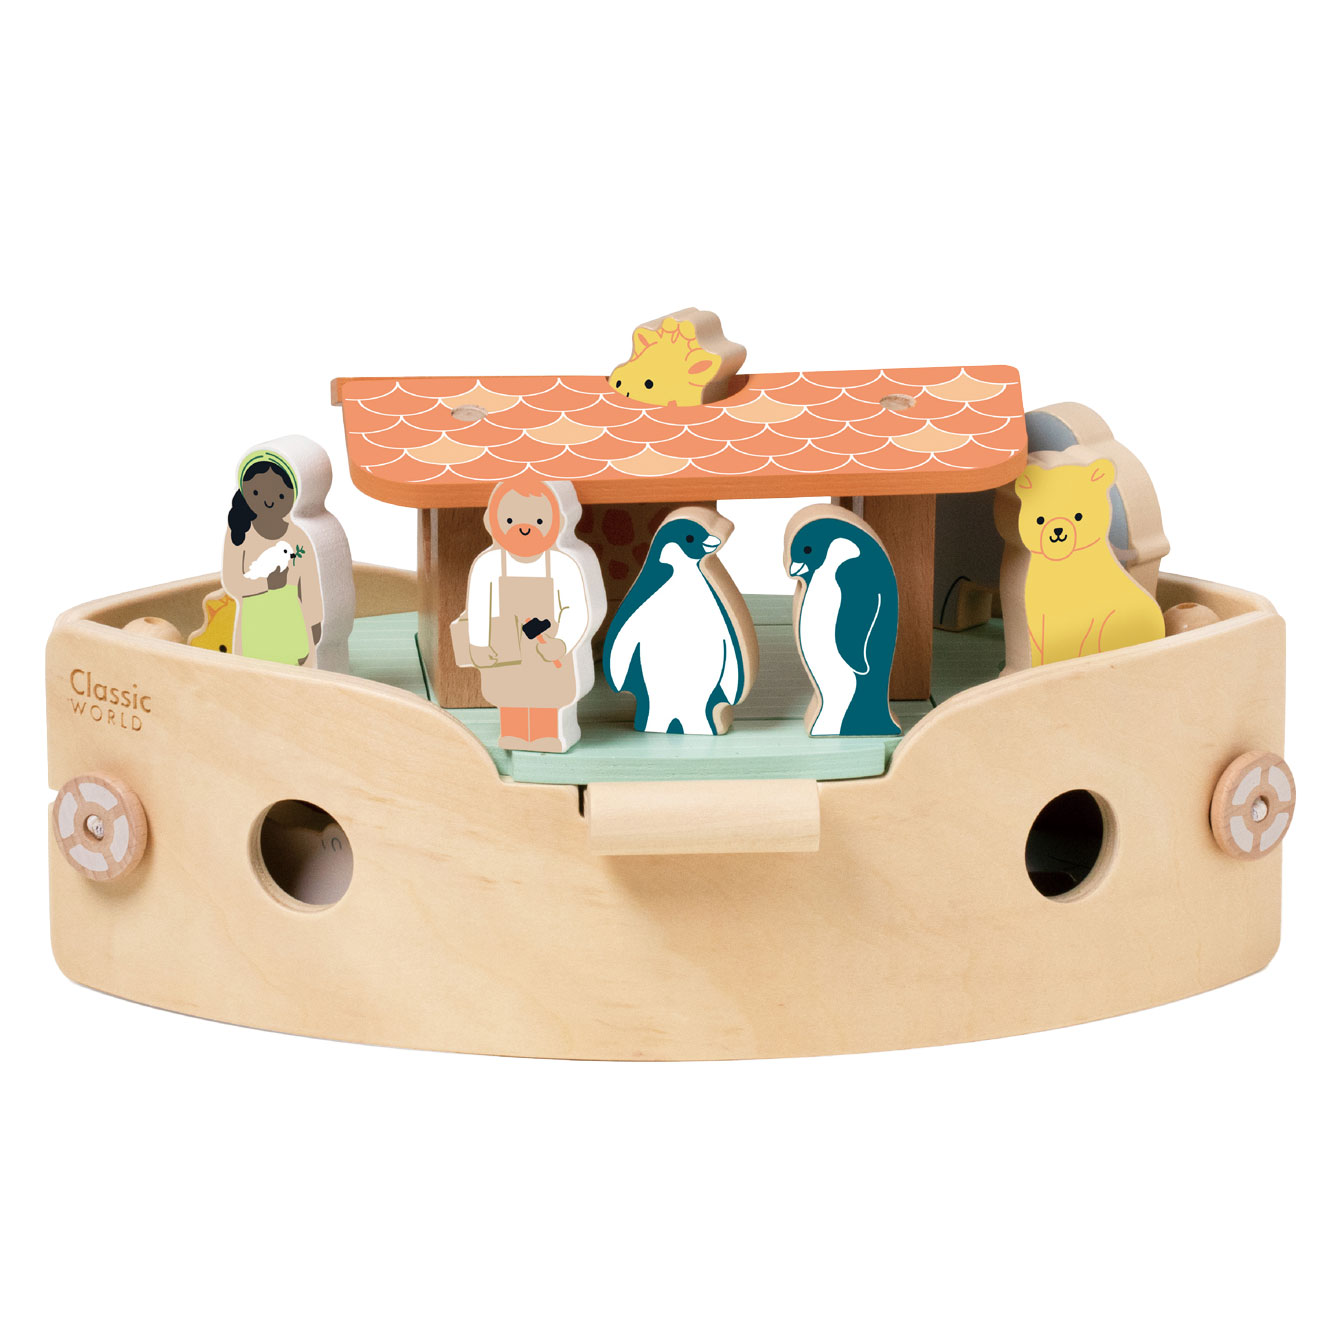 Classic World Ensemble de construction de bateaux en bois pour arche de Noé avec animaux, 16dlg.